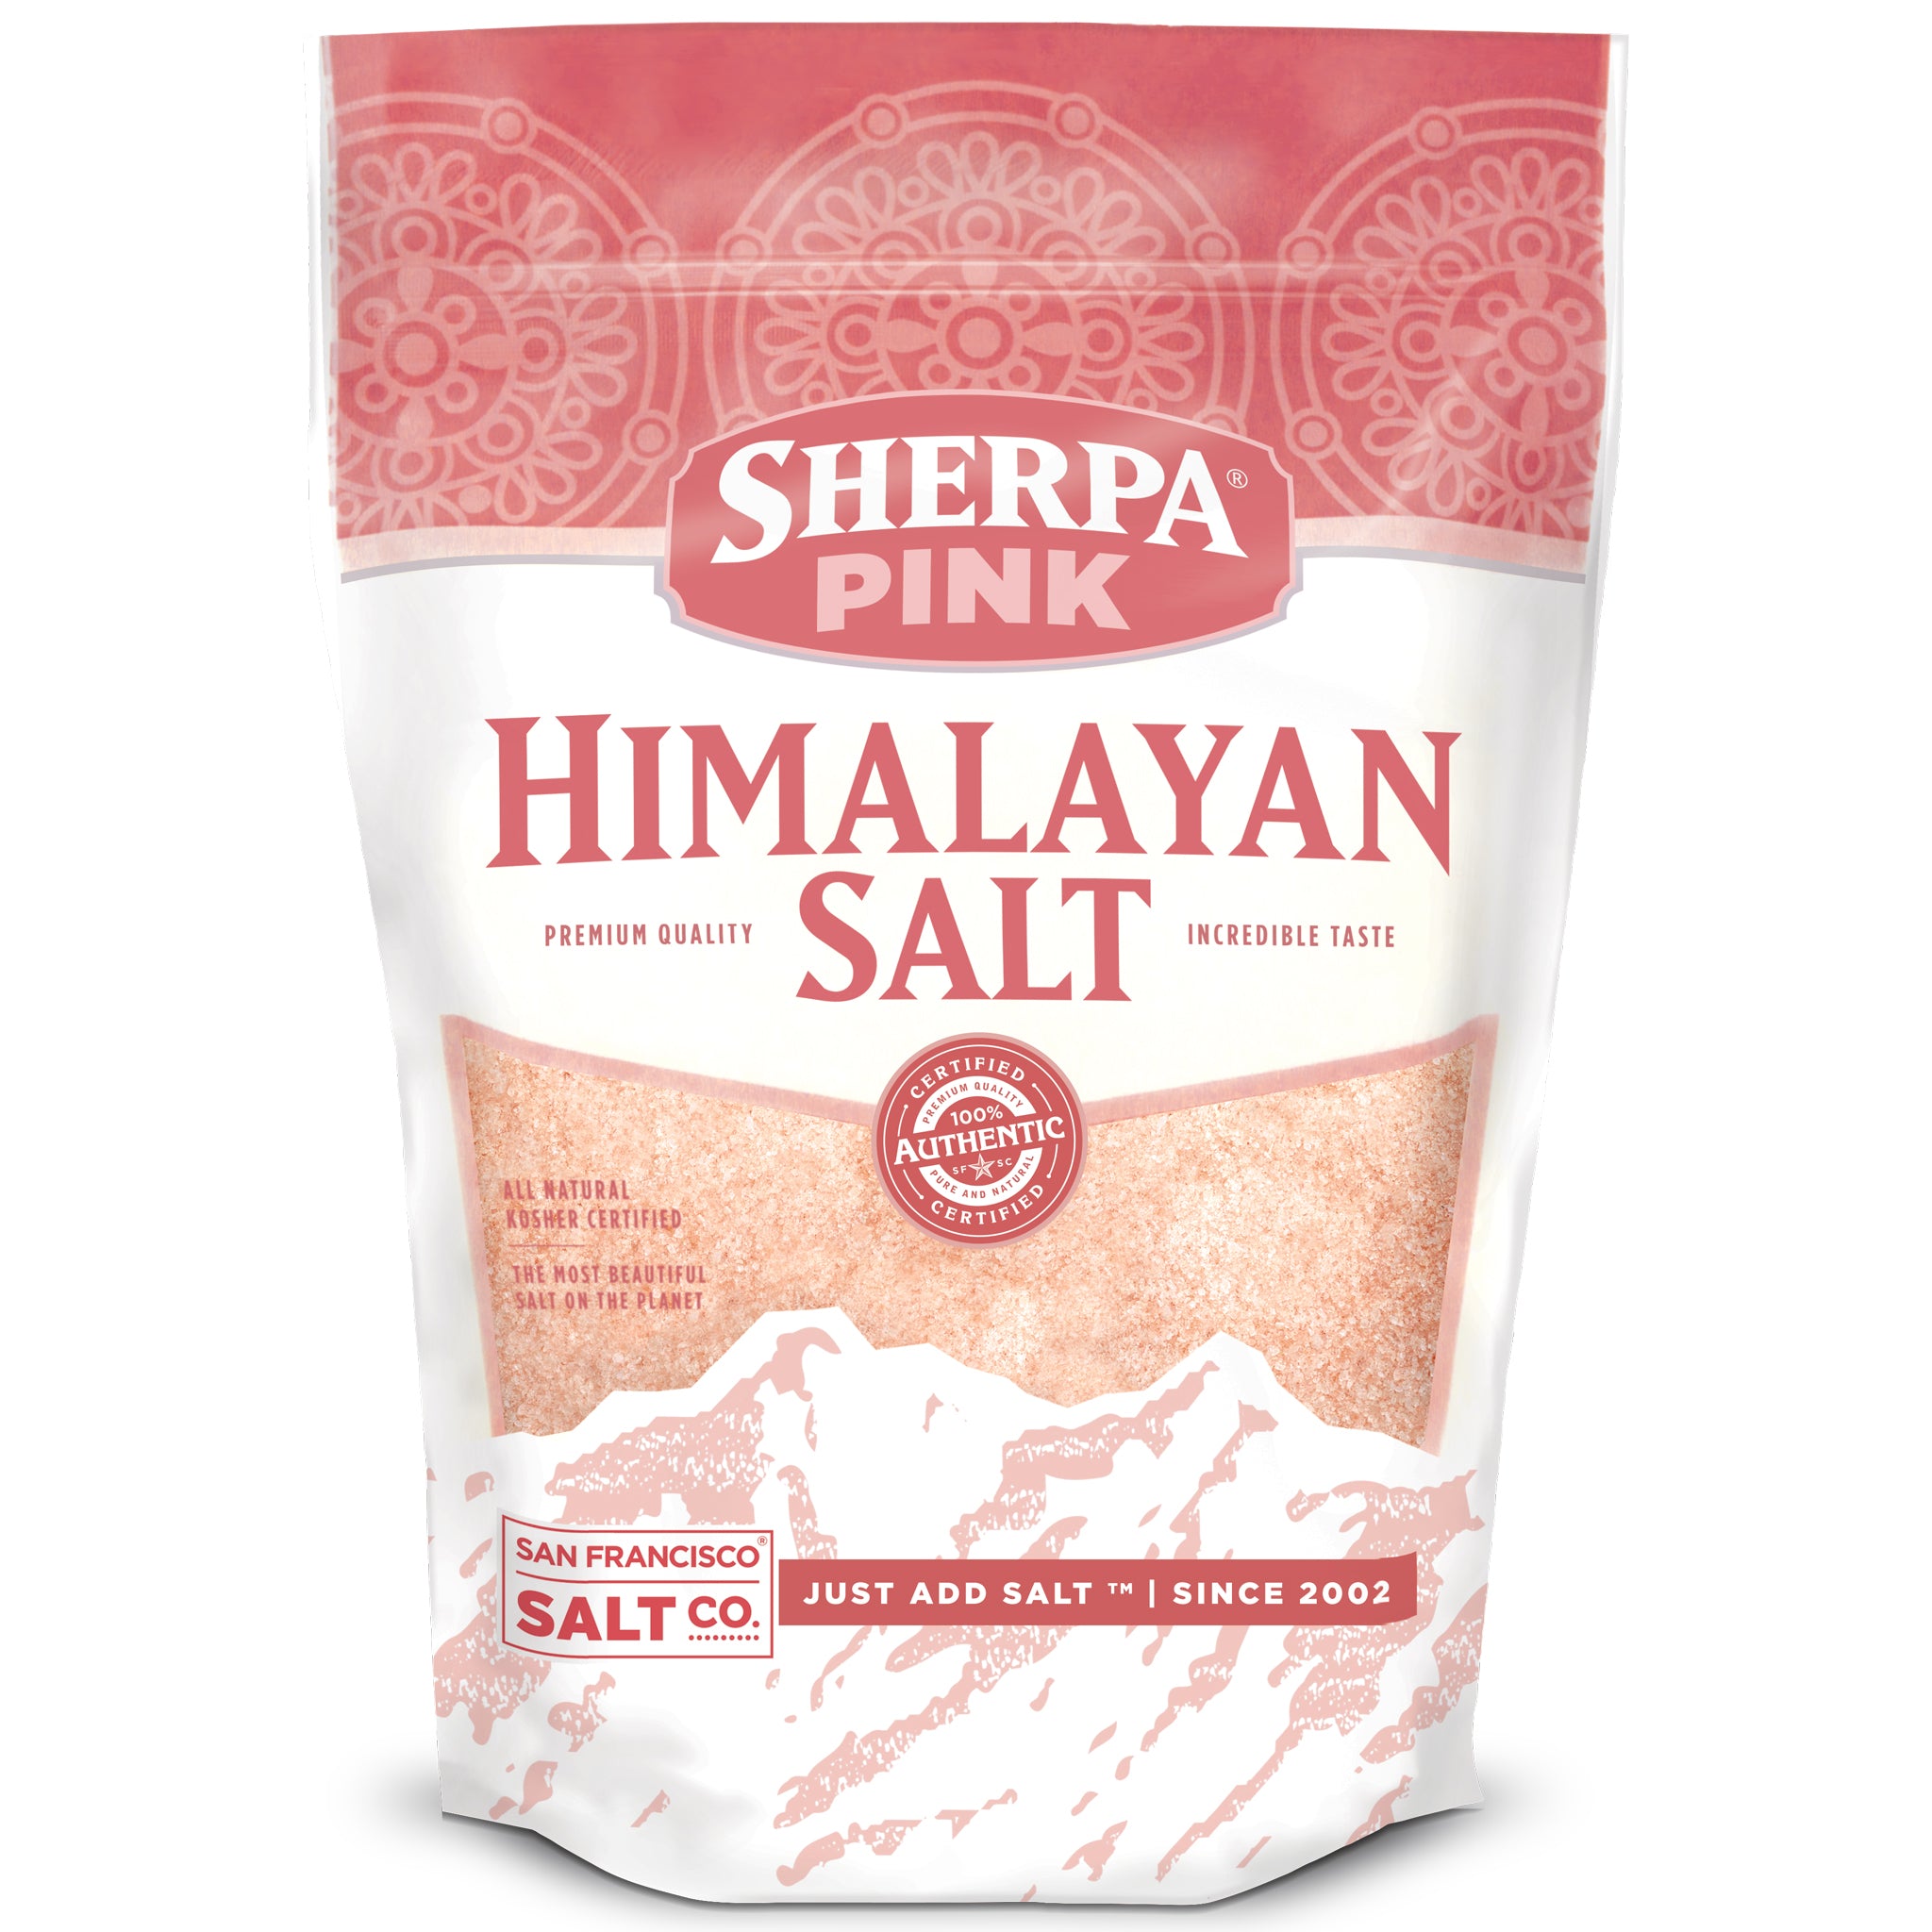 Sherpa Pink Himalayan Salt Bulk 25 lb